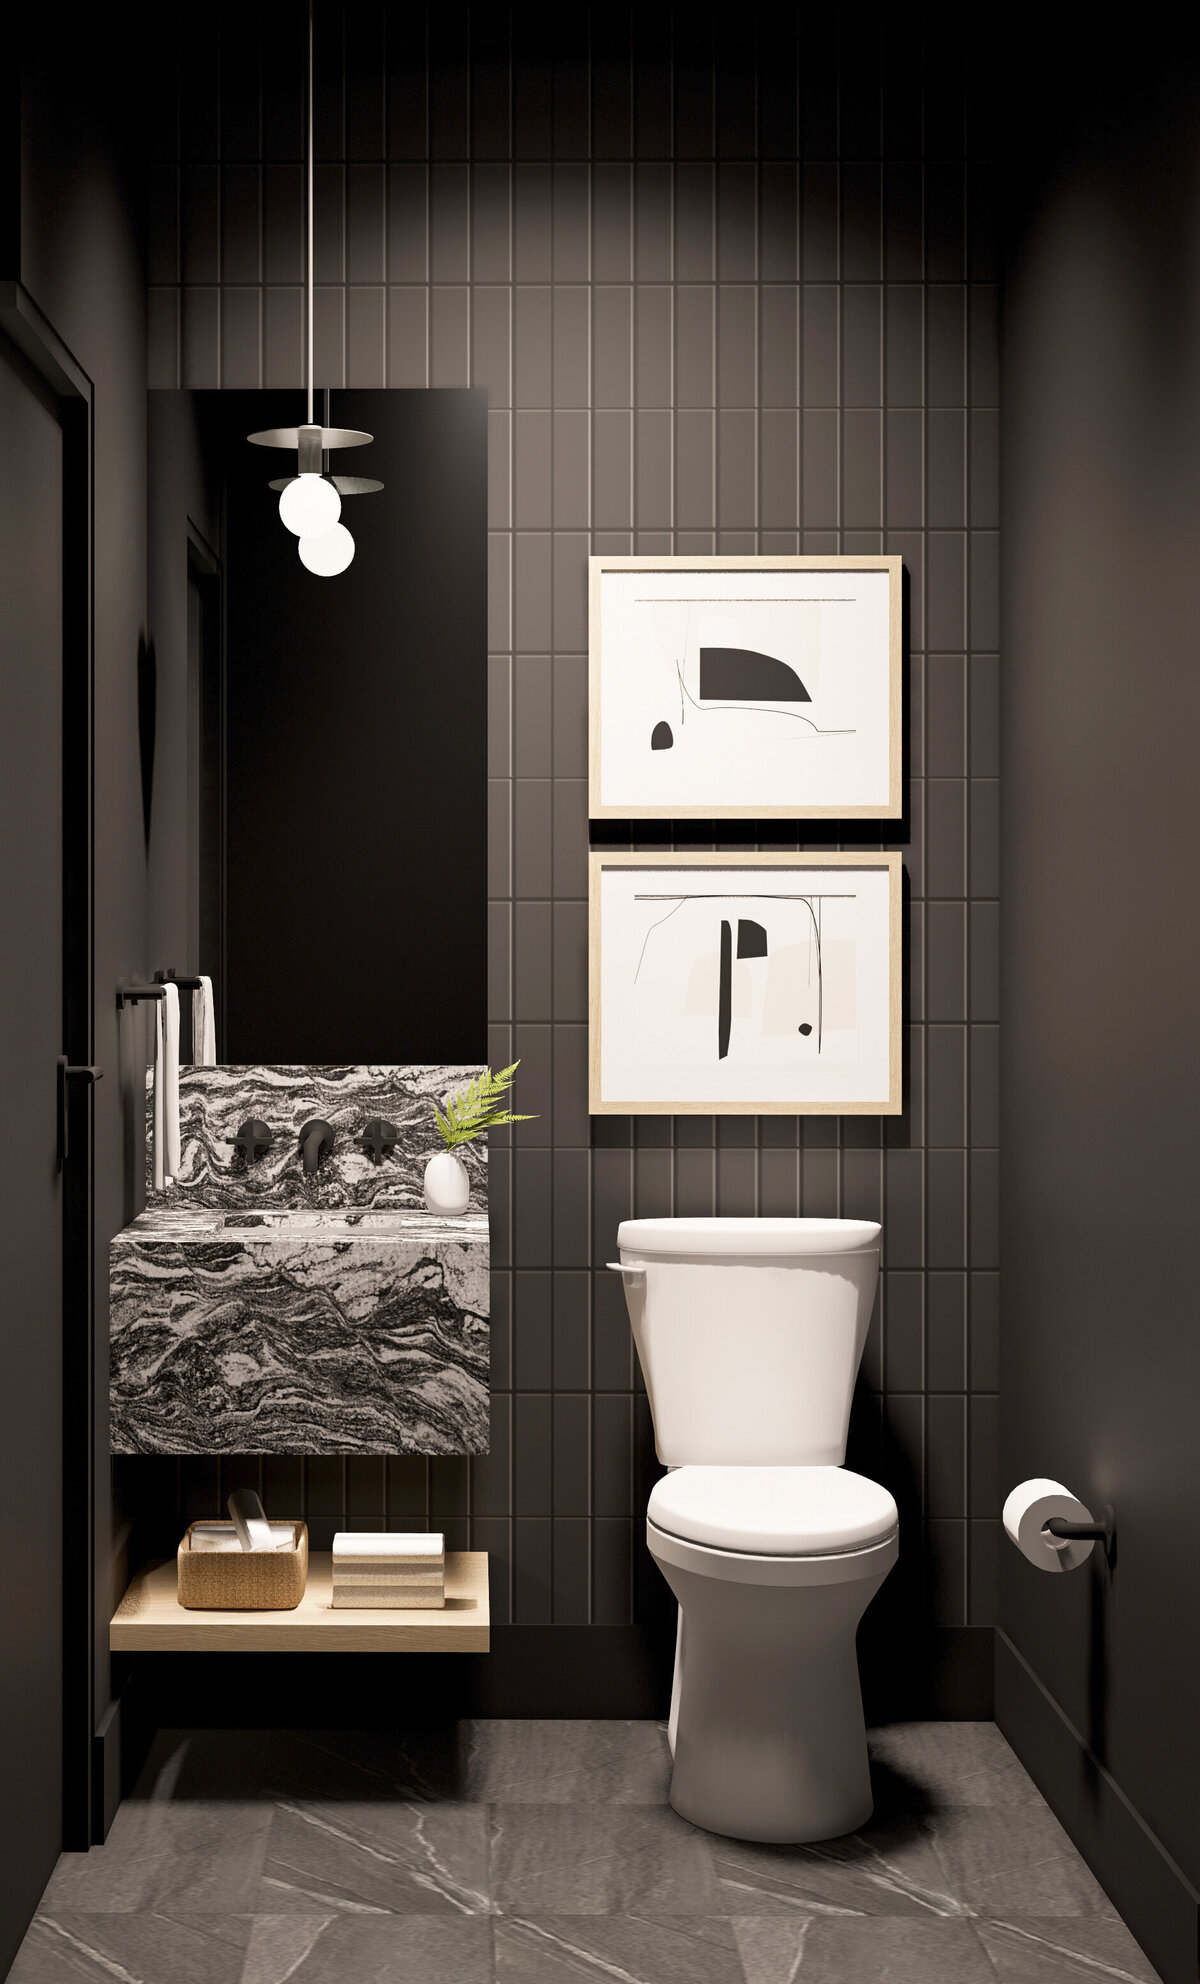 Bathroom interior design rendering by Ashley de Boer Interiors